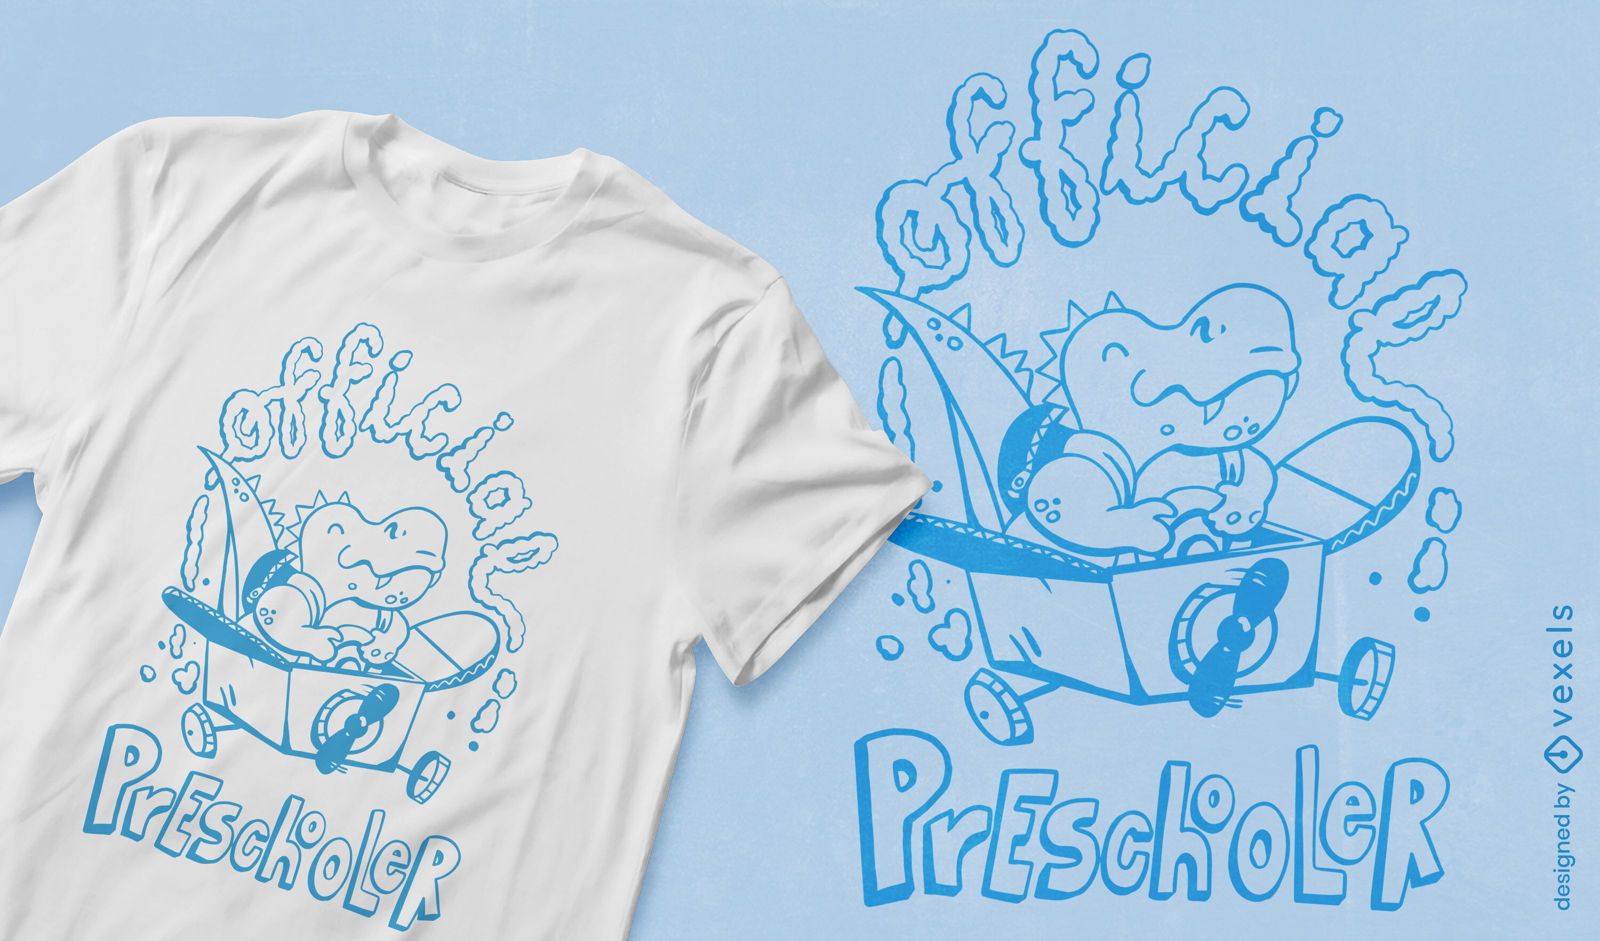 Cute dinosaur preschooler t-shirt design